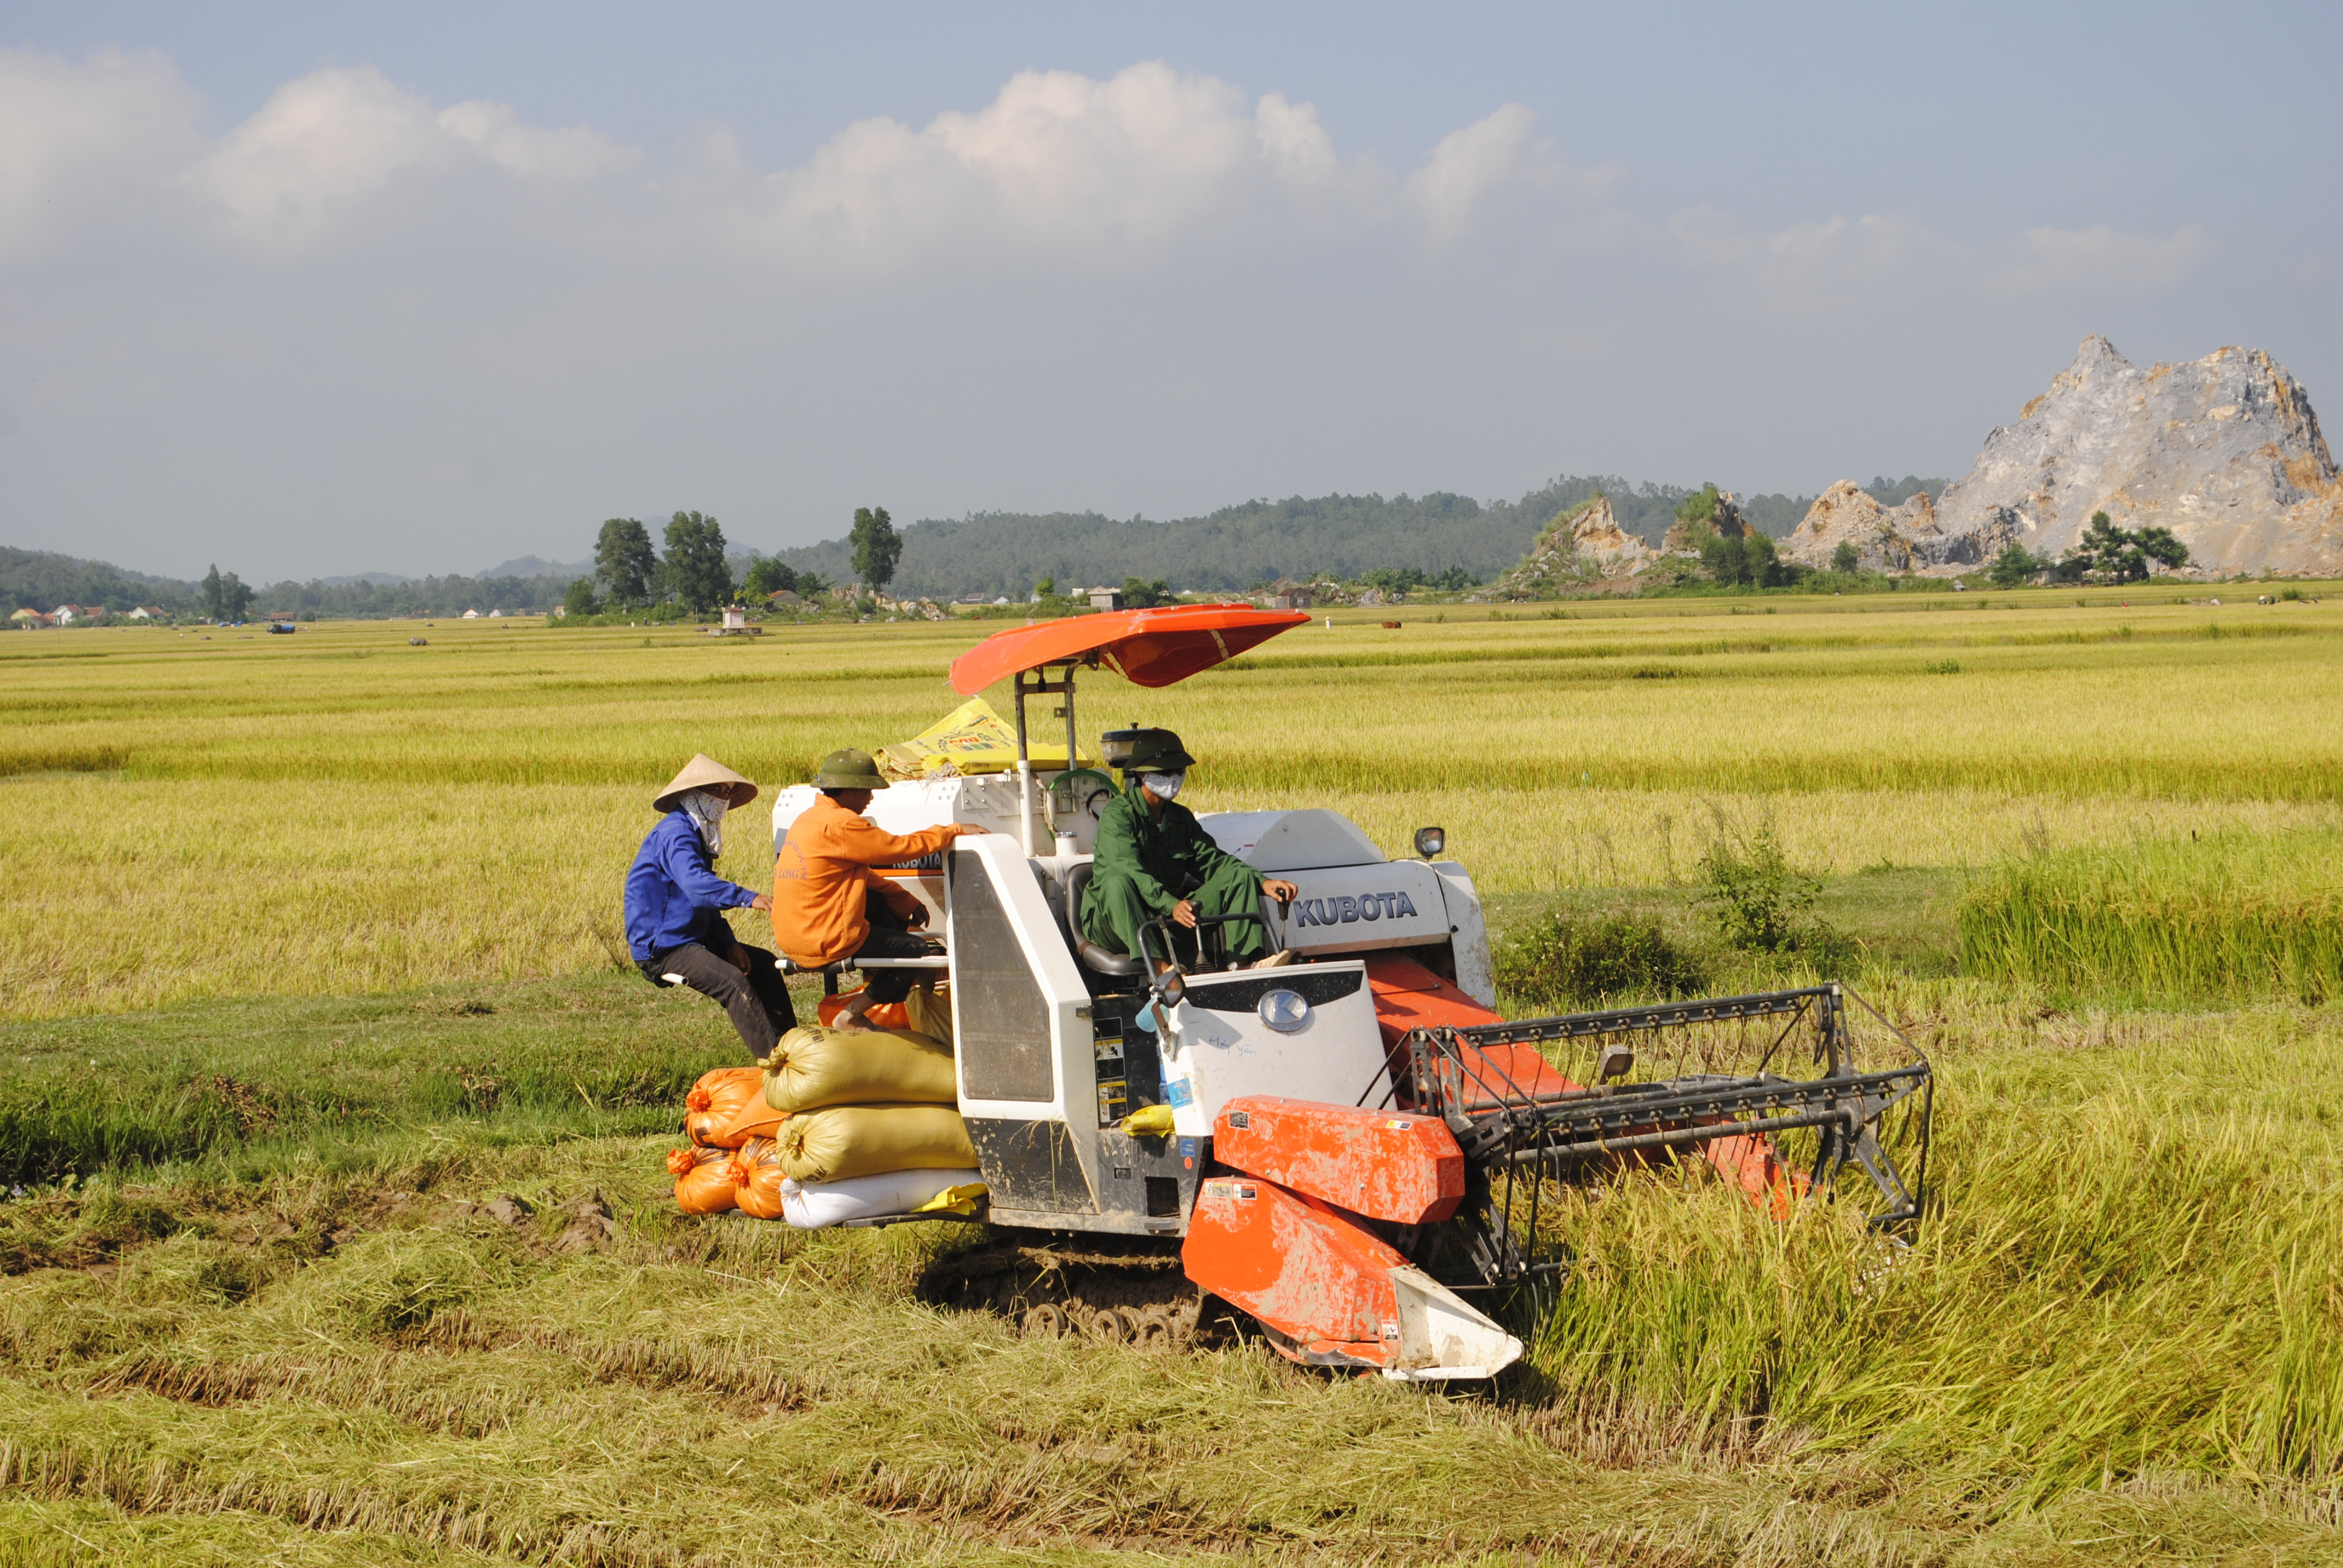 Hiện tại huyện Yên Thành hiện có hơn 1.000 ha lúa theo mô hình liên kết với doanh nghiệp. Ảnh: Mai Hoa